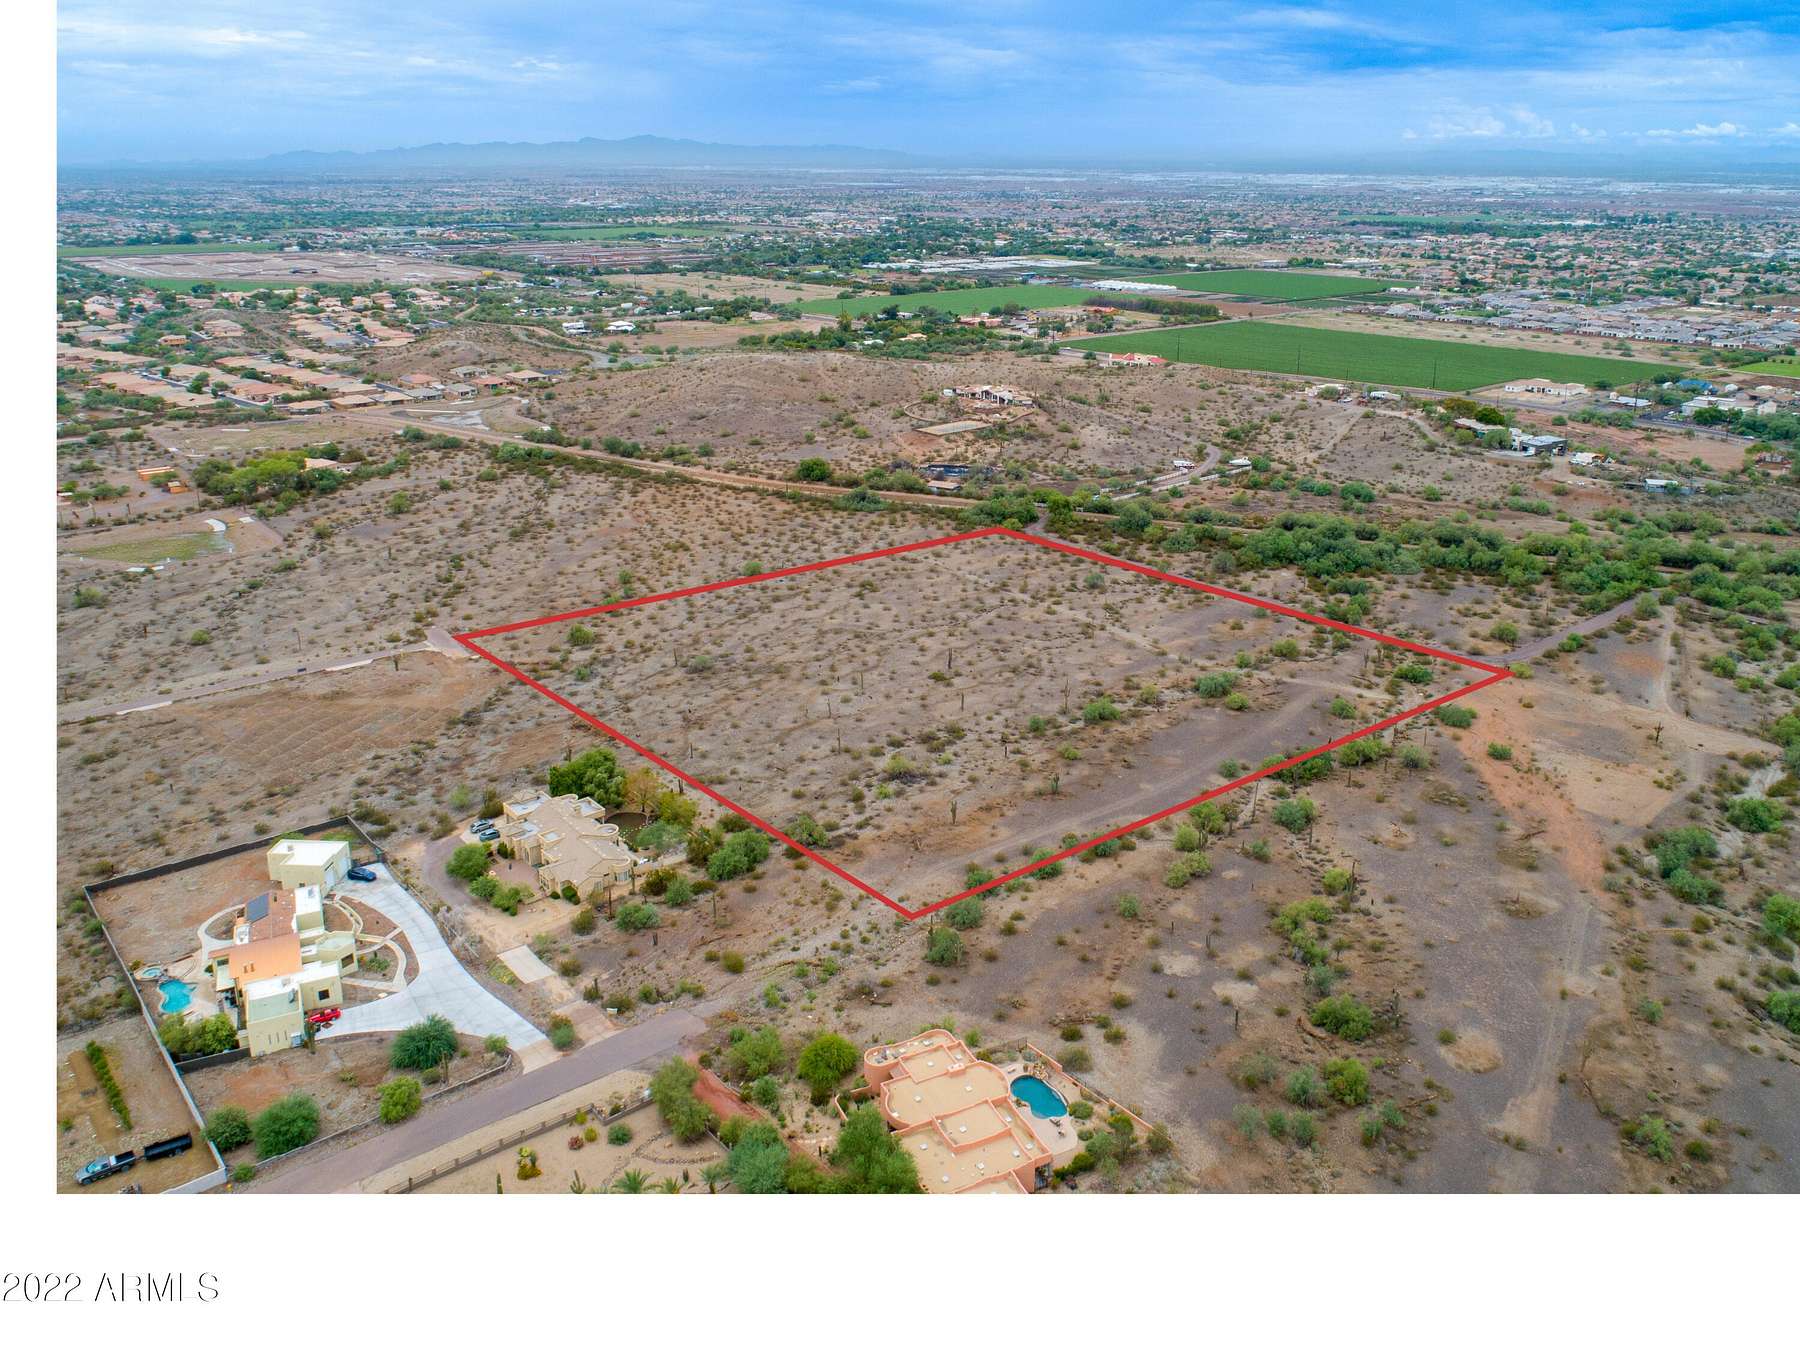 9.7 Acres of Land for Sale in Phoenix, Arizona